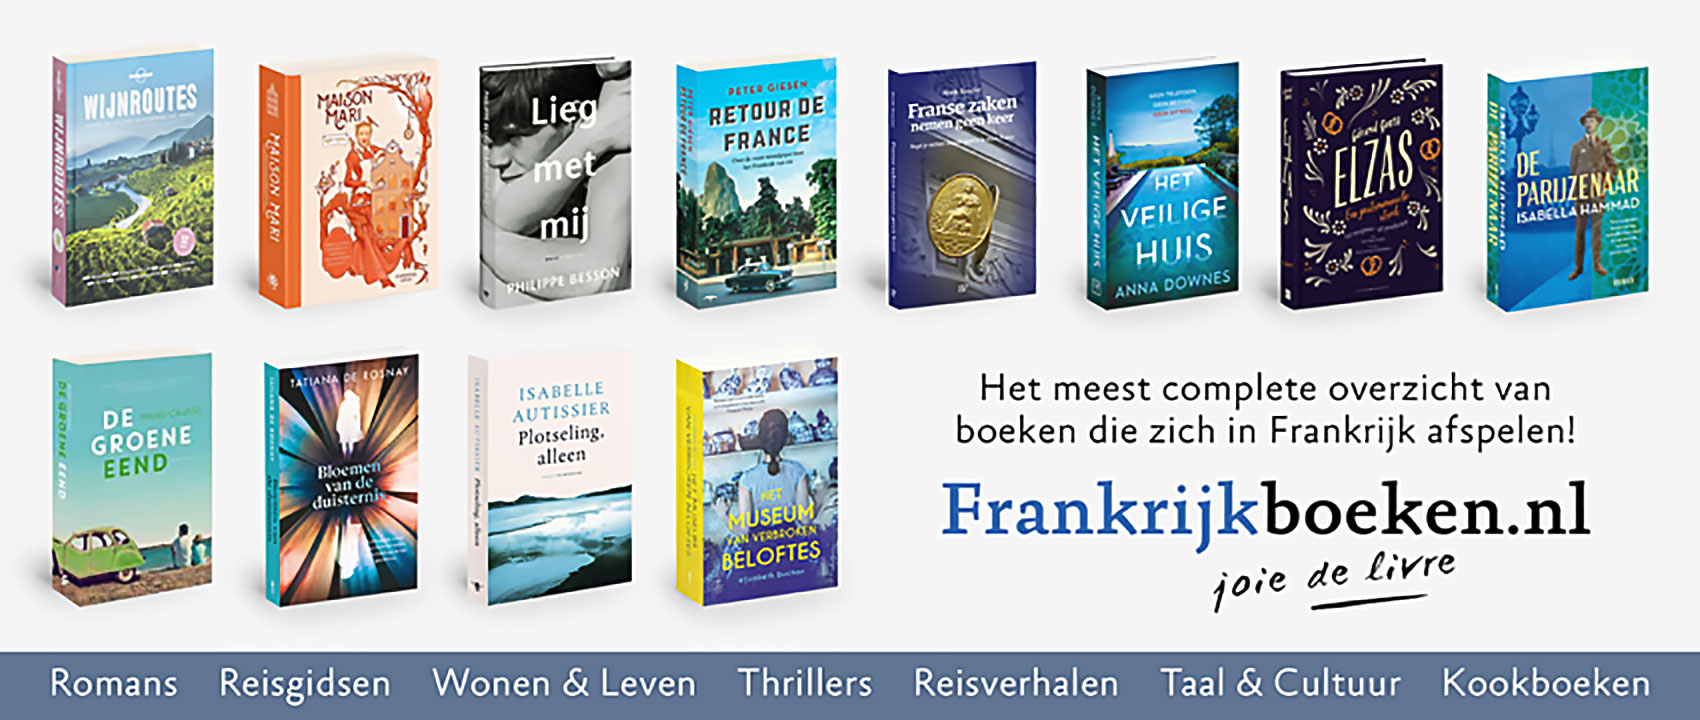 frankrijkboeken.nl